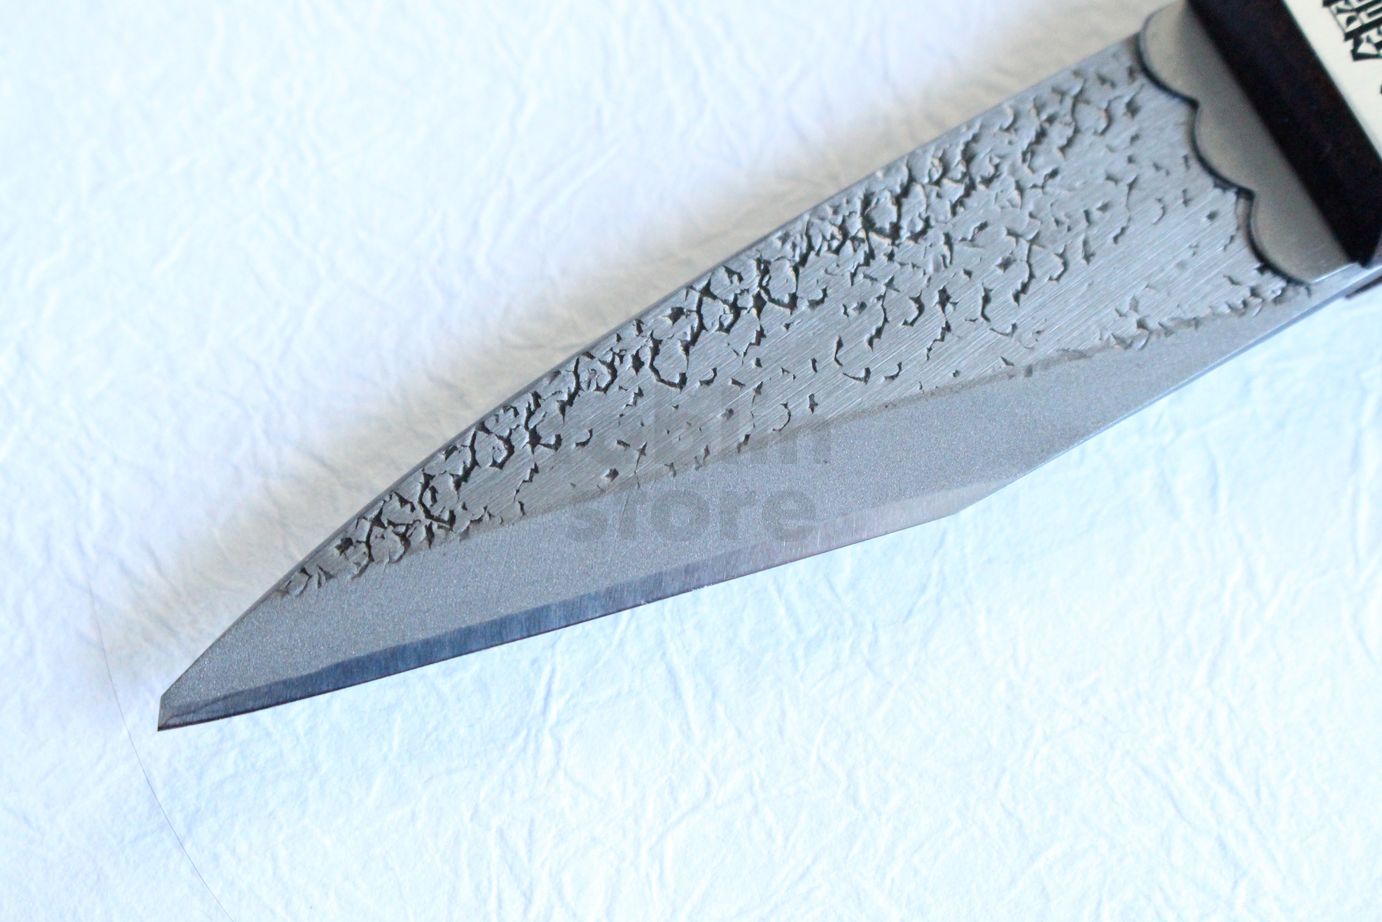 Good value made-in-Japan kiridashi knives from Olfa. Both knives